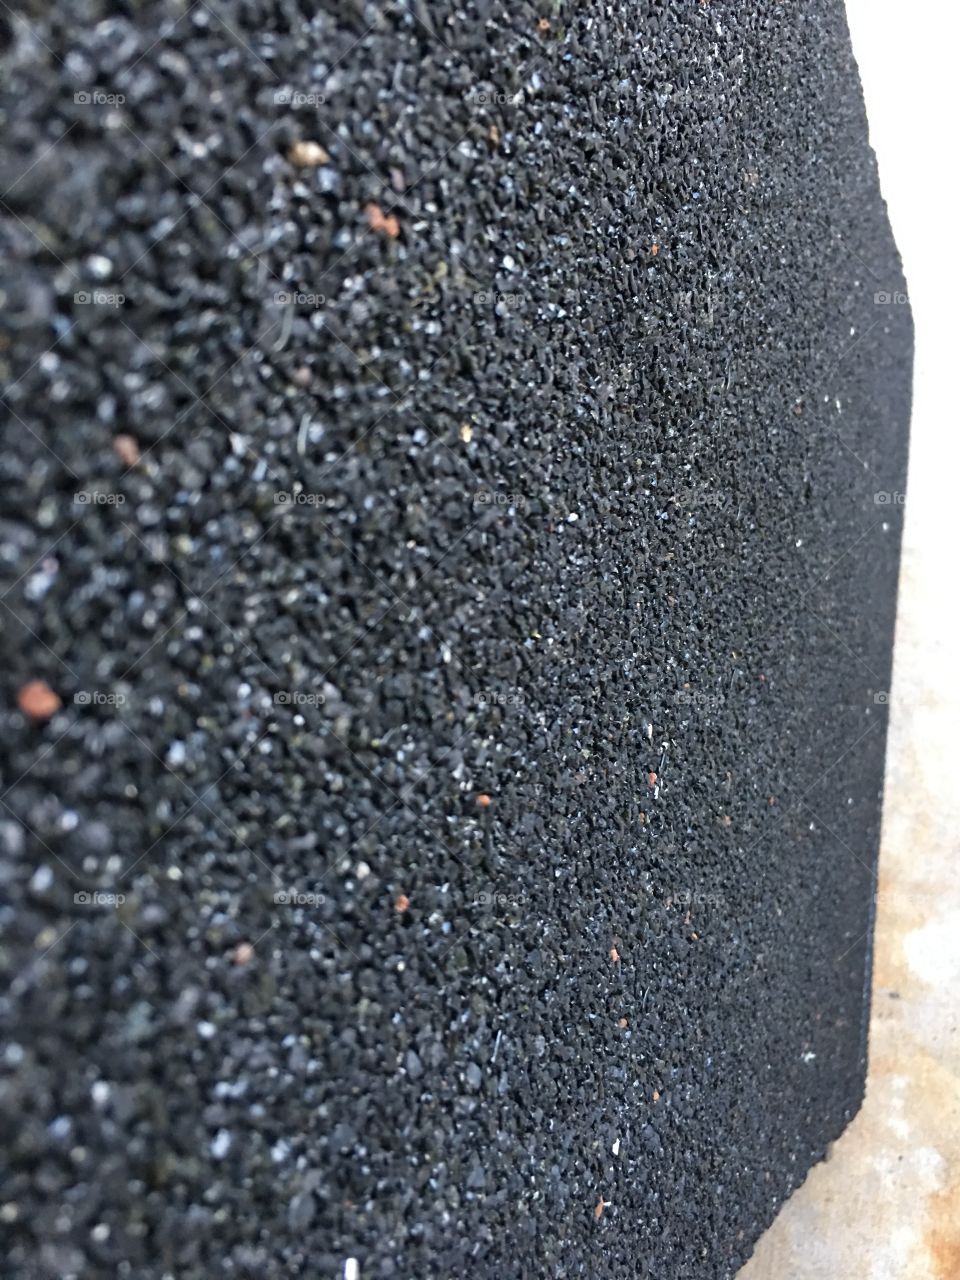 Black gravel. 